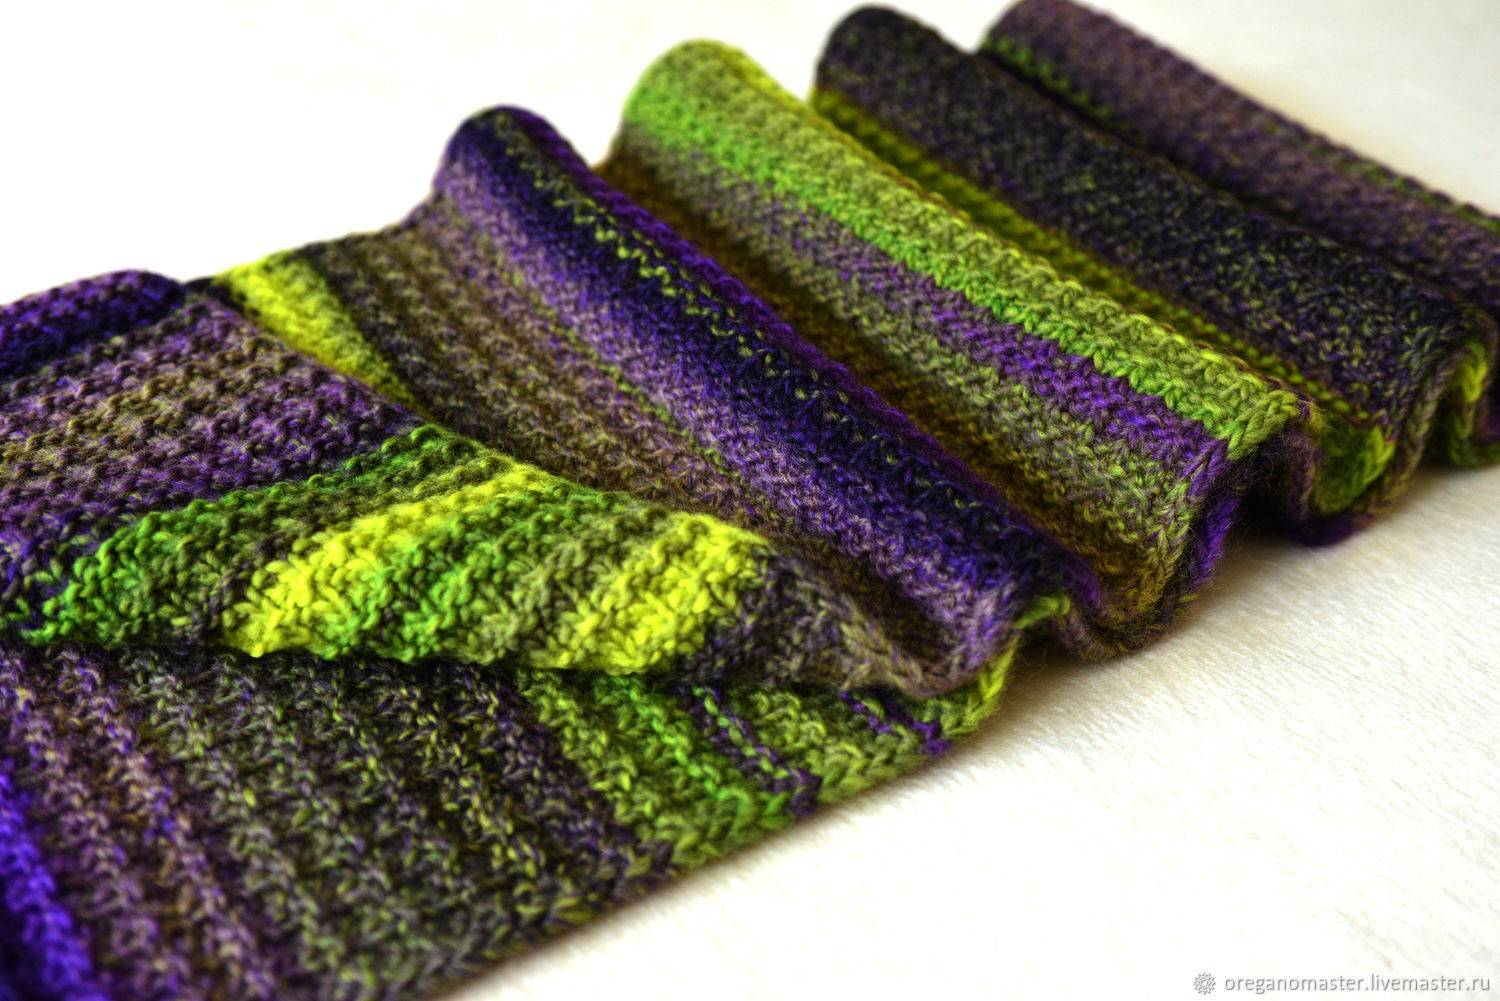 Как выбрать пряжу для вязания спицами и не ошибиться?